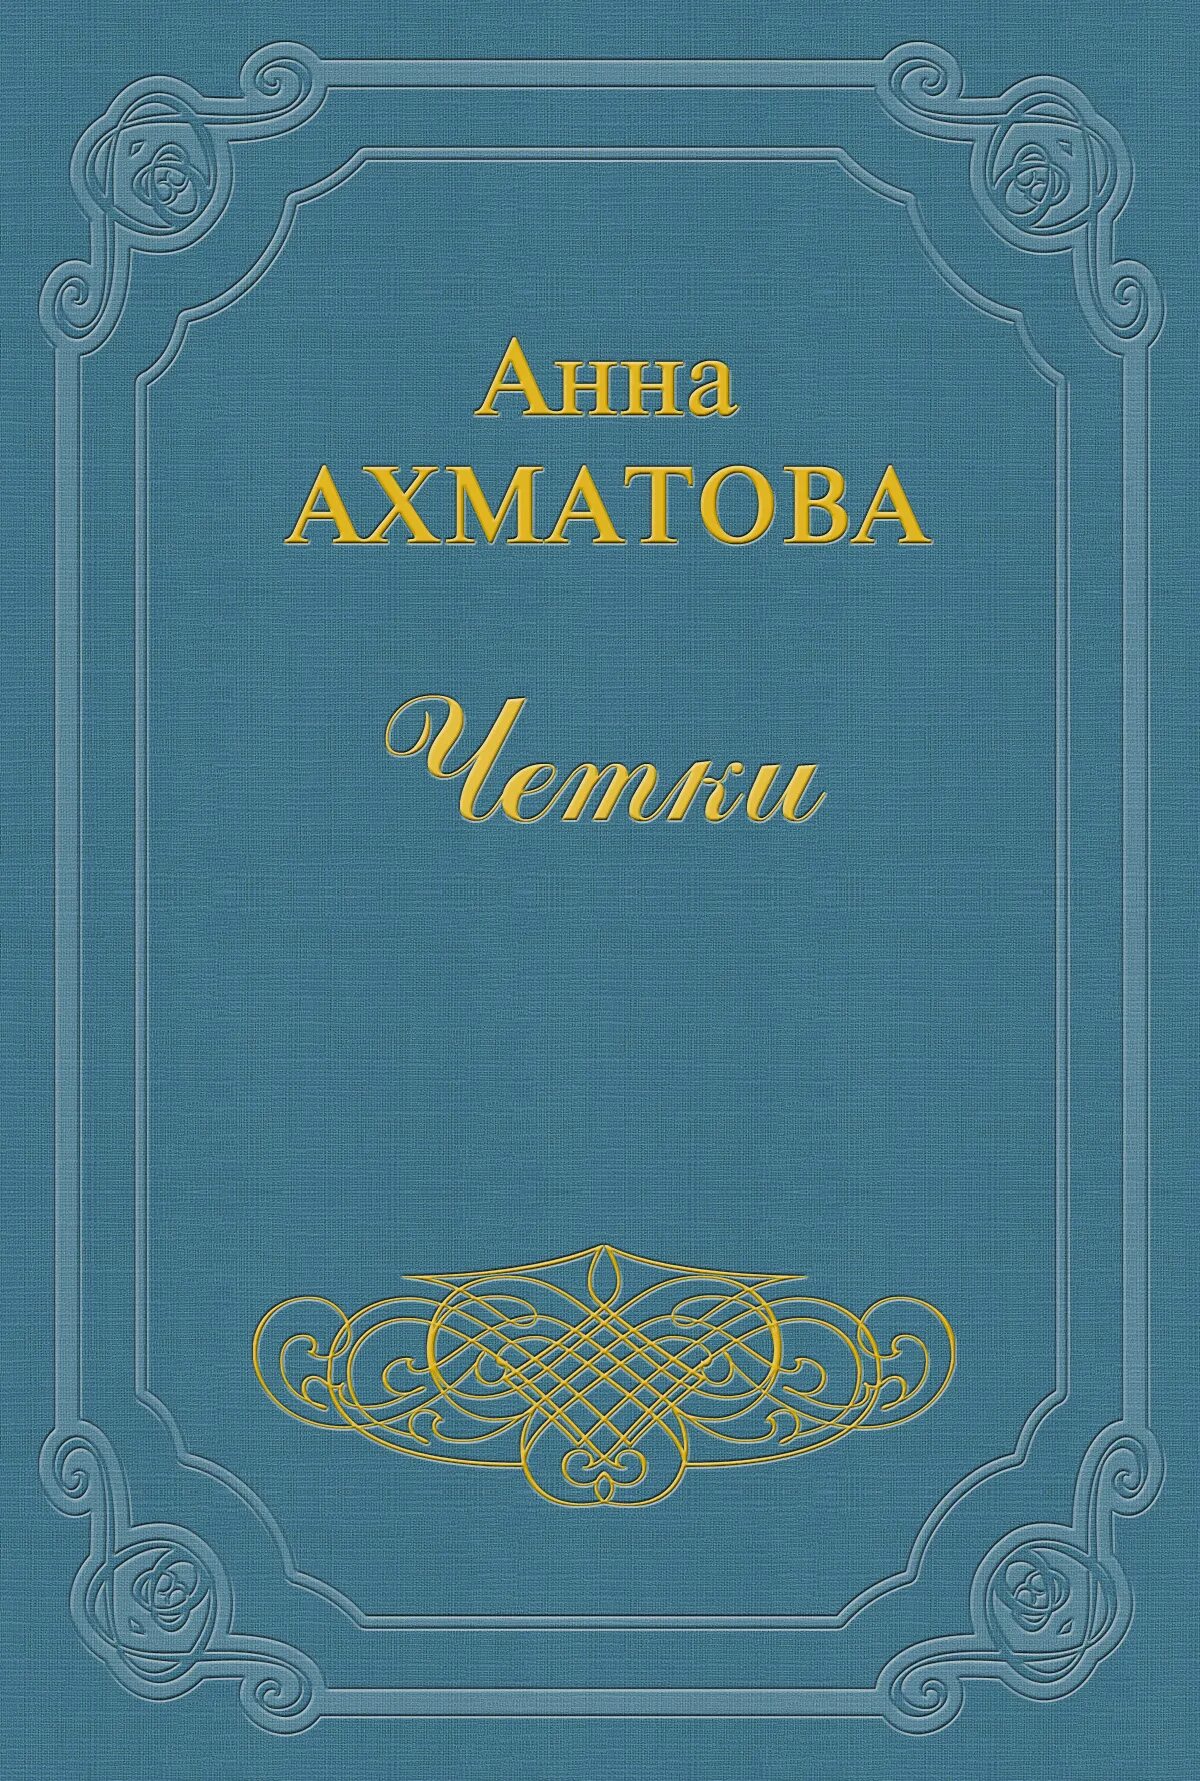 Ахматова сборник стихотворений